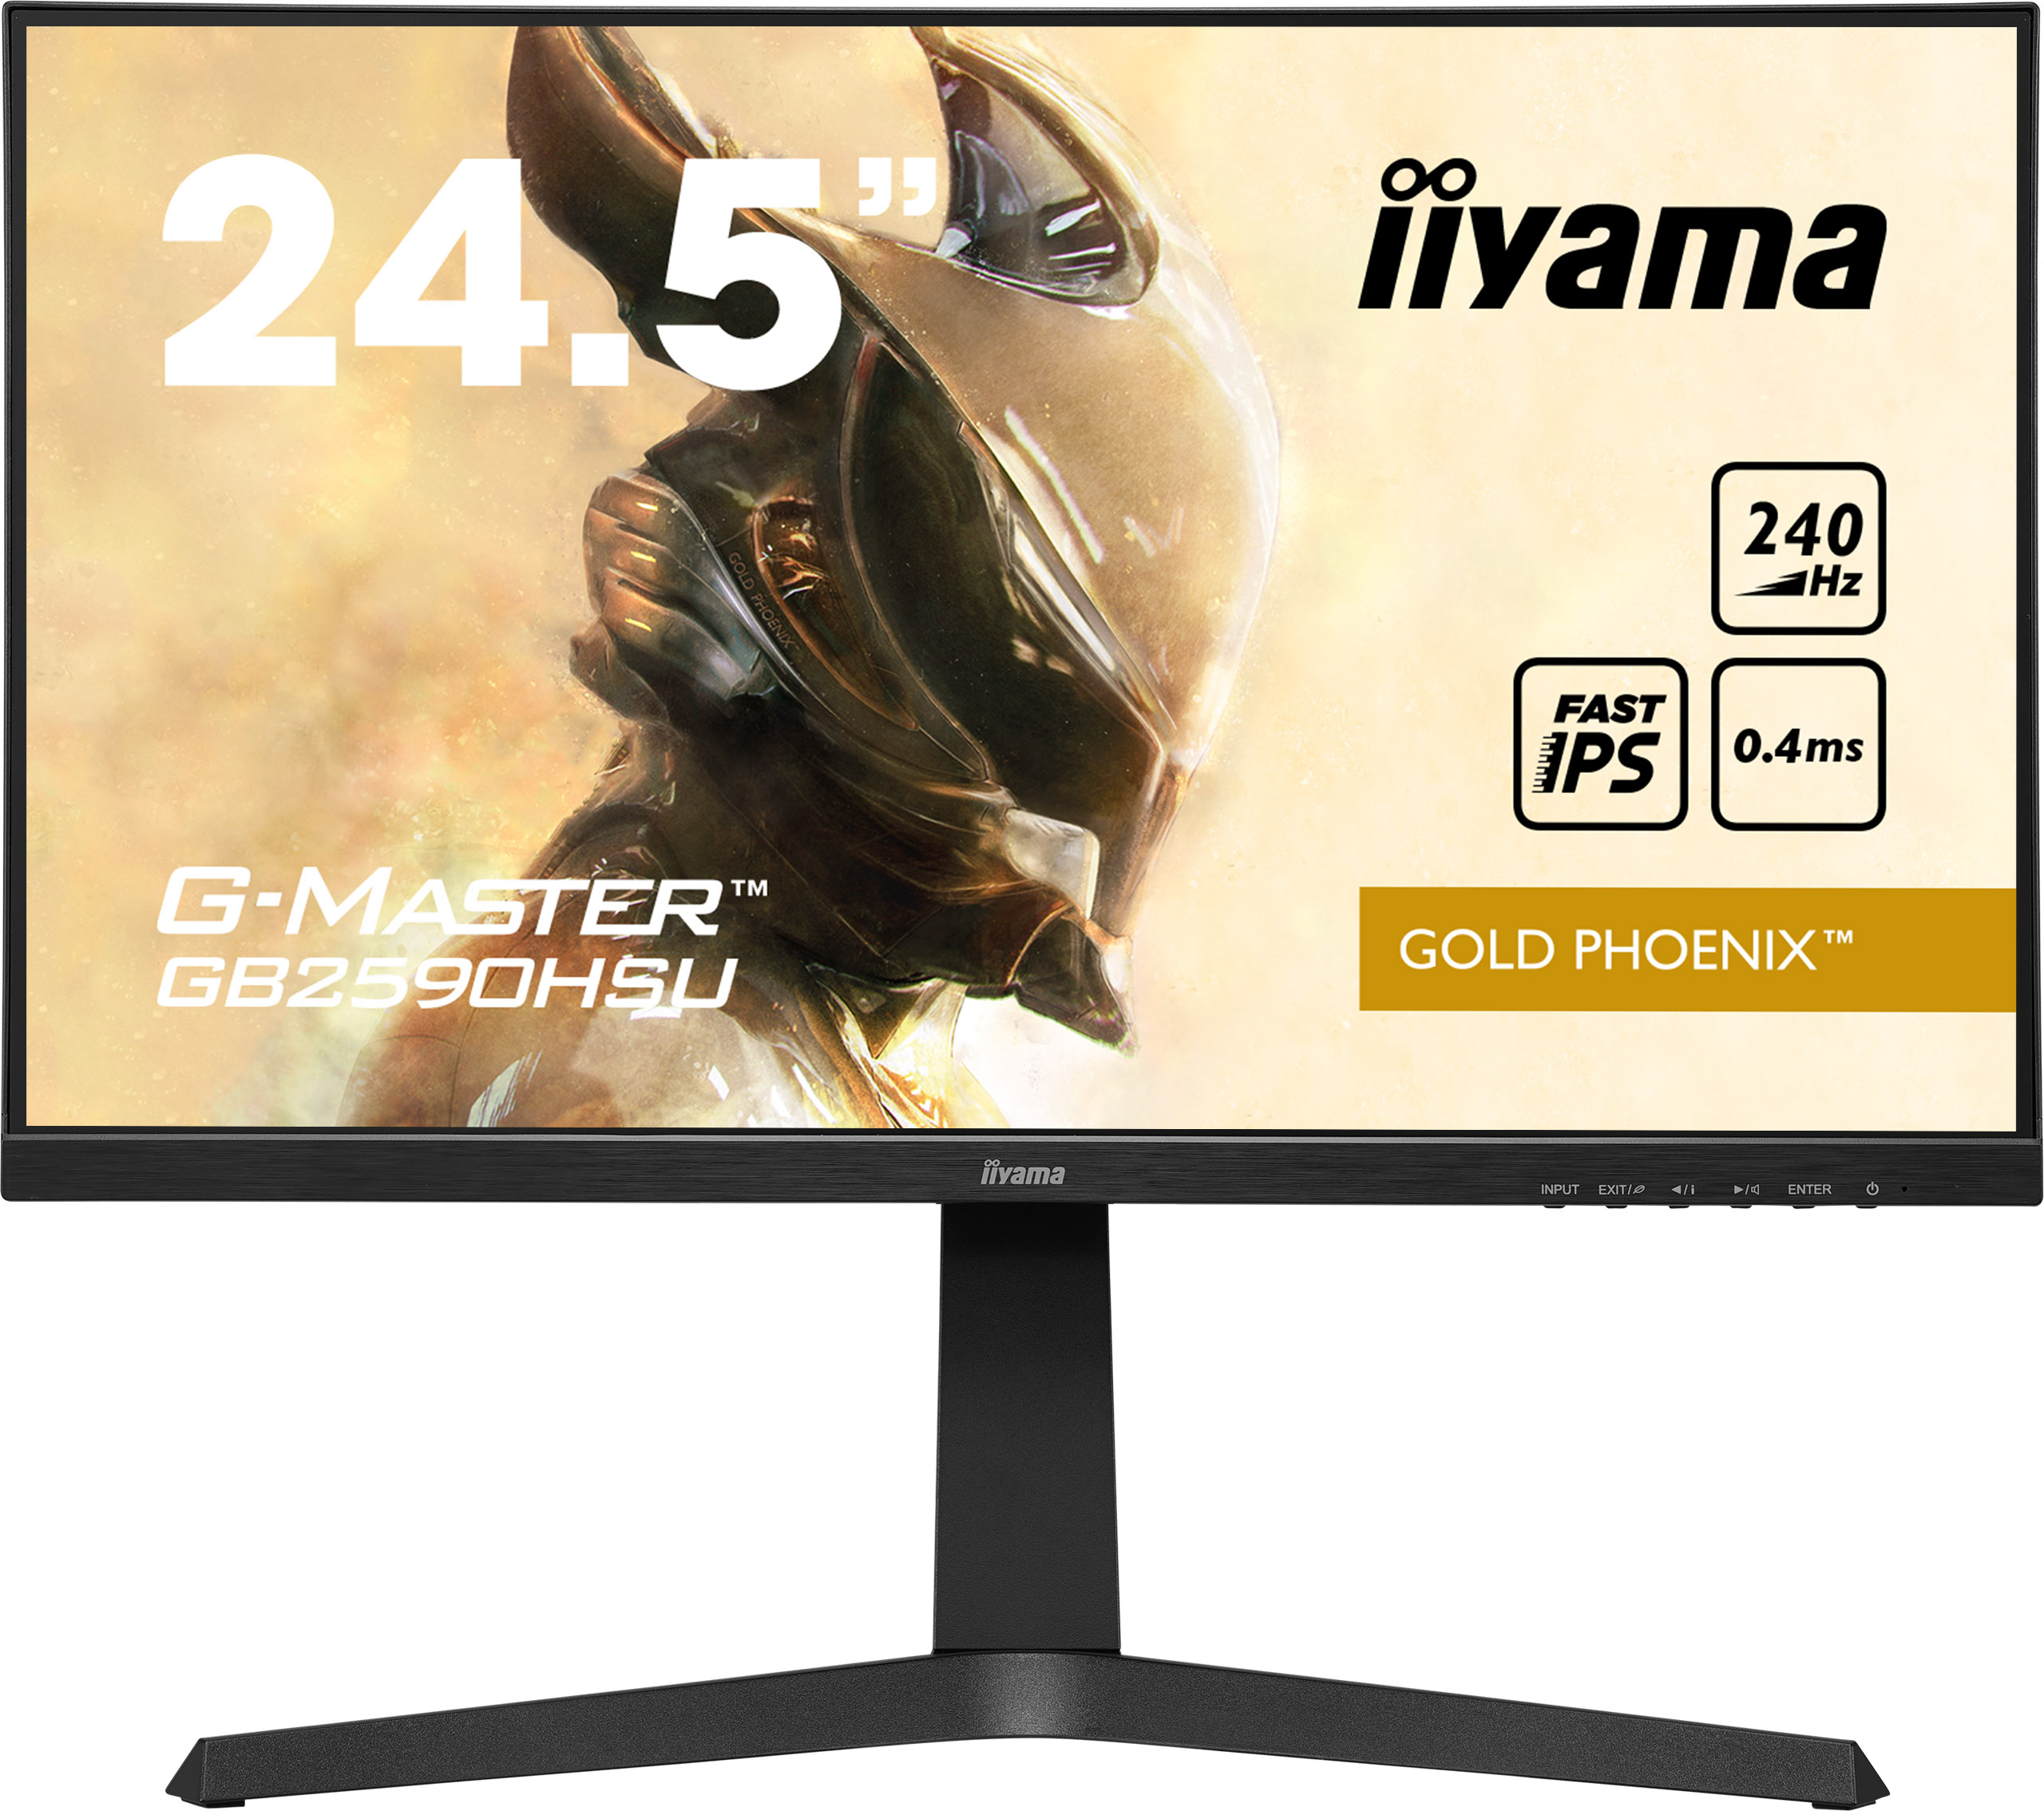 Iiyama G-MASTER GB2590HSU-B1 GOLD PHOENIX | 24,5" | Full HD | Gaming Monitor